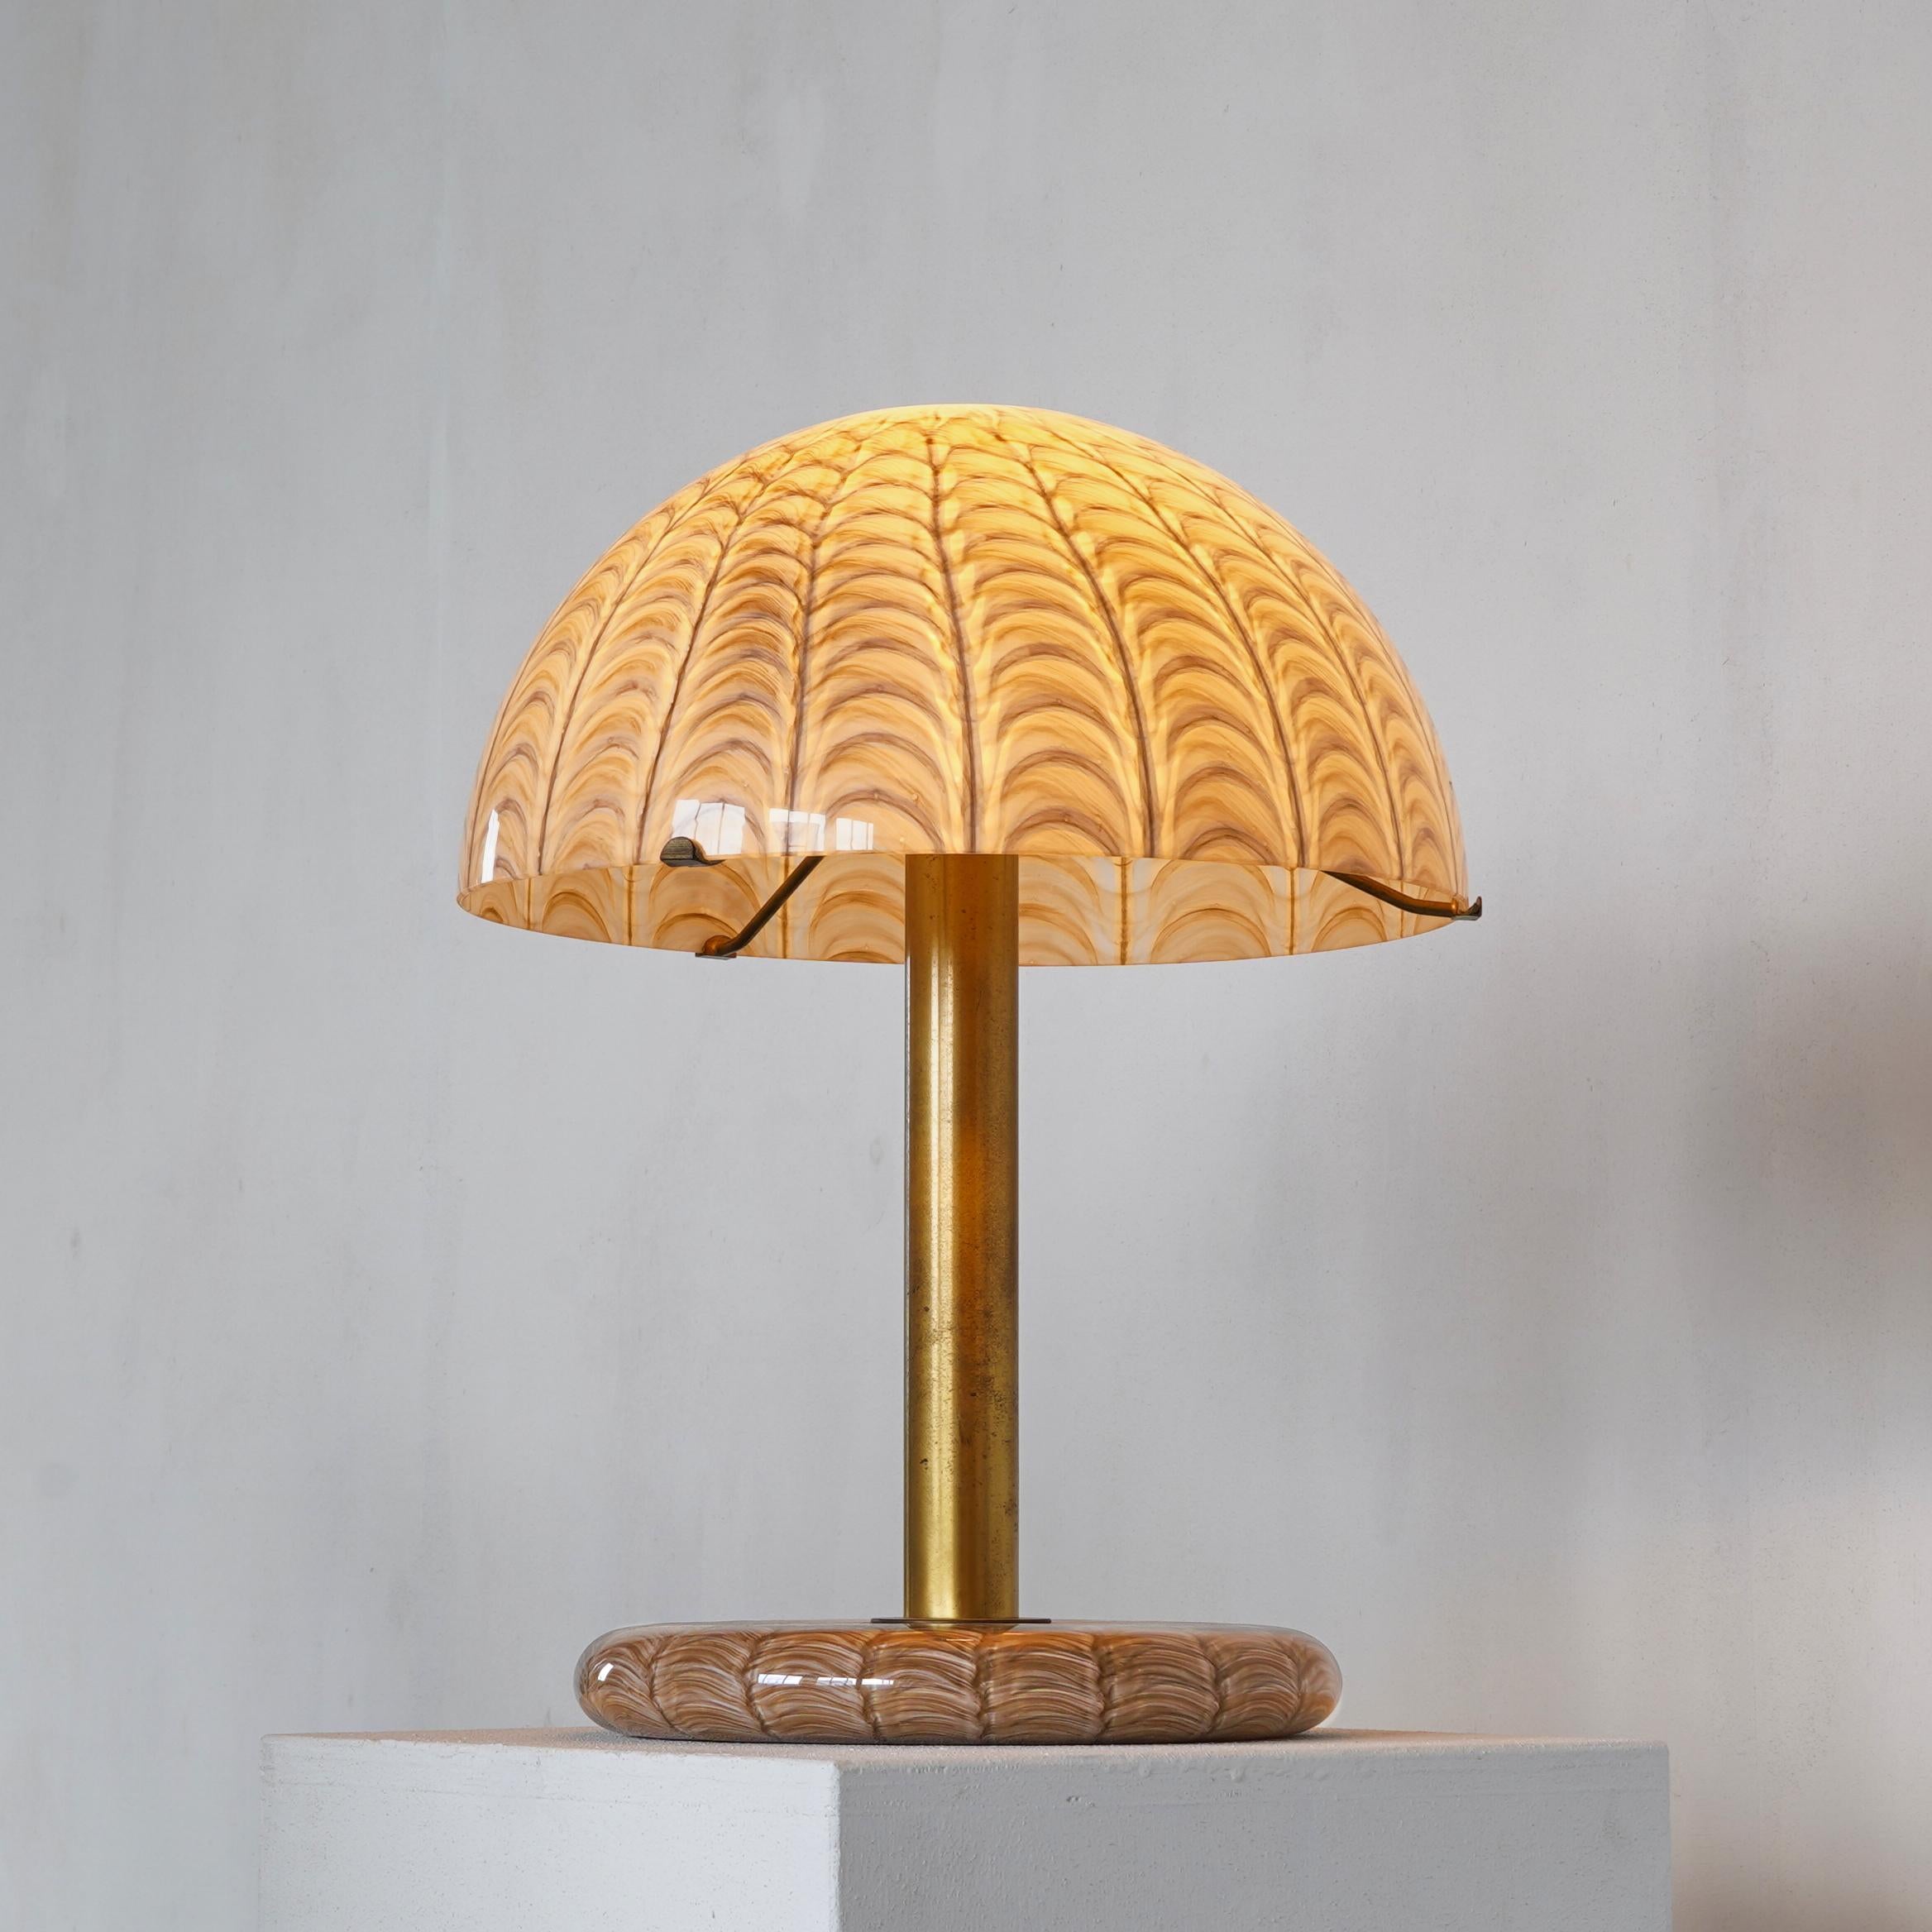 Ludovico Diaz de Santillana Lampe de table Venini, Italie, années 1960.

Cette lampe de table rare témoigne de l'exquise finesse du travail de Ludovico Diaz de Santillana (1931-1989). Son grand abat-jour est très fin et présente ce motif immersif